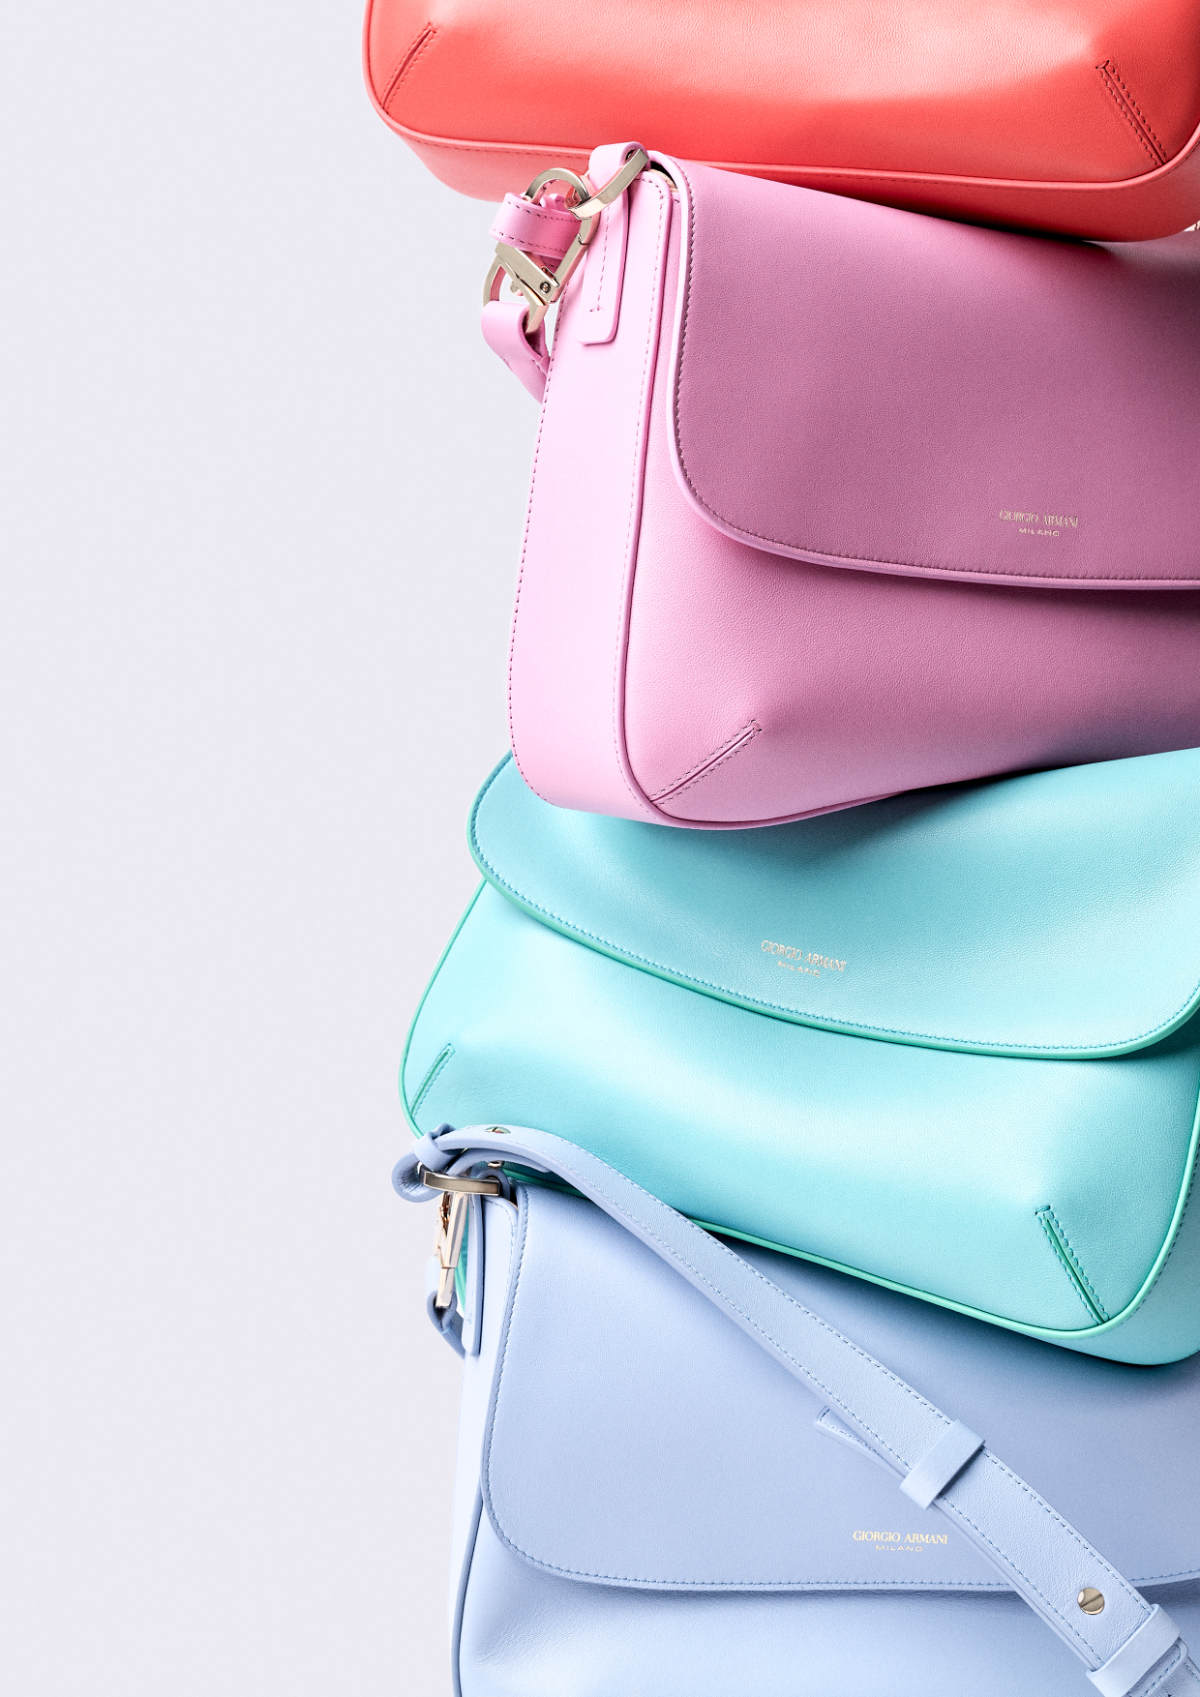 Giorgio Armani Presents Its New La Prima Soft Bag